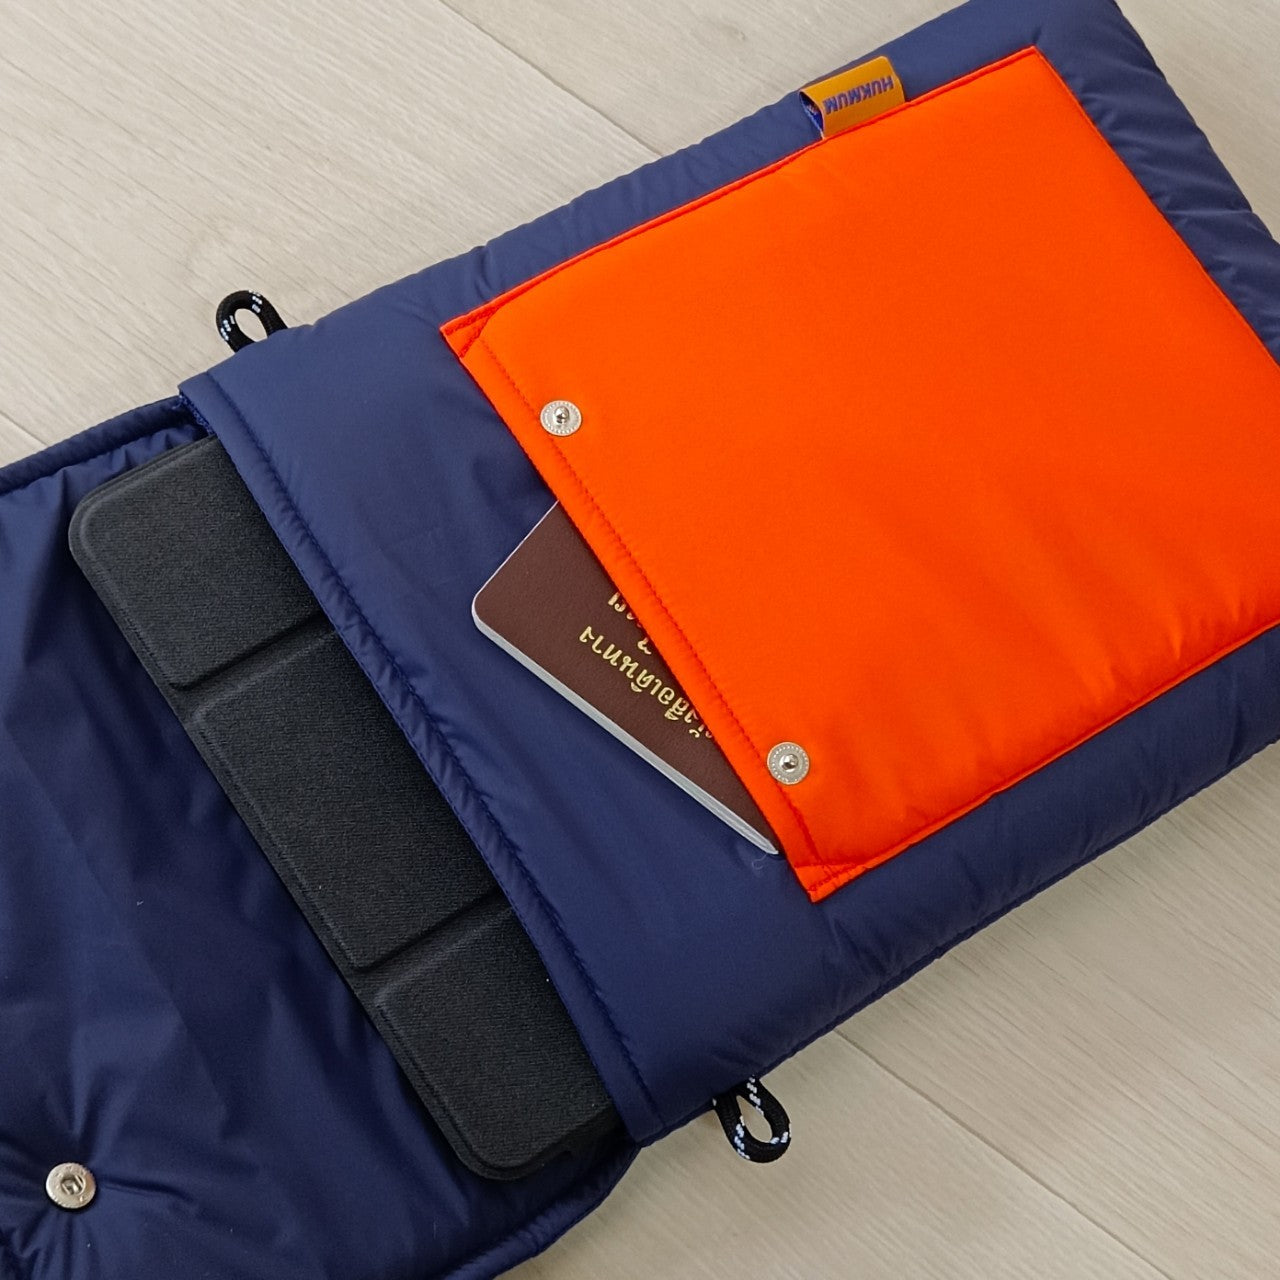 HUKMUM - 13" Tabtab Laptop Bag (Navy Orange)